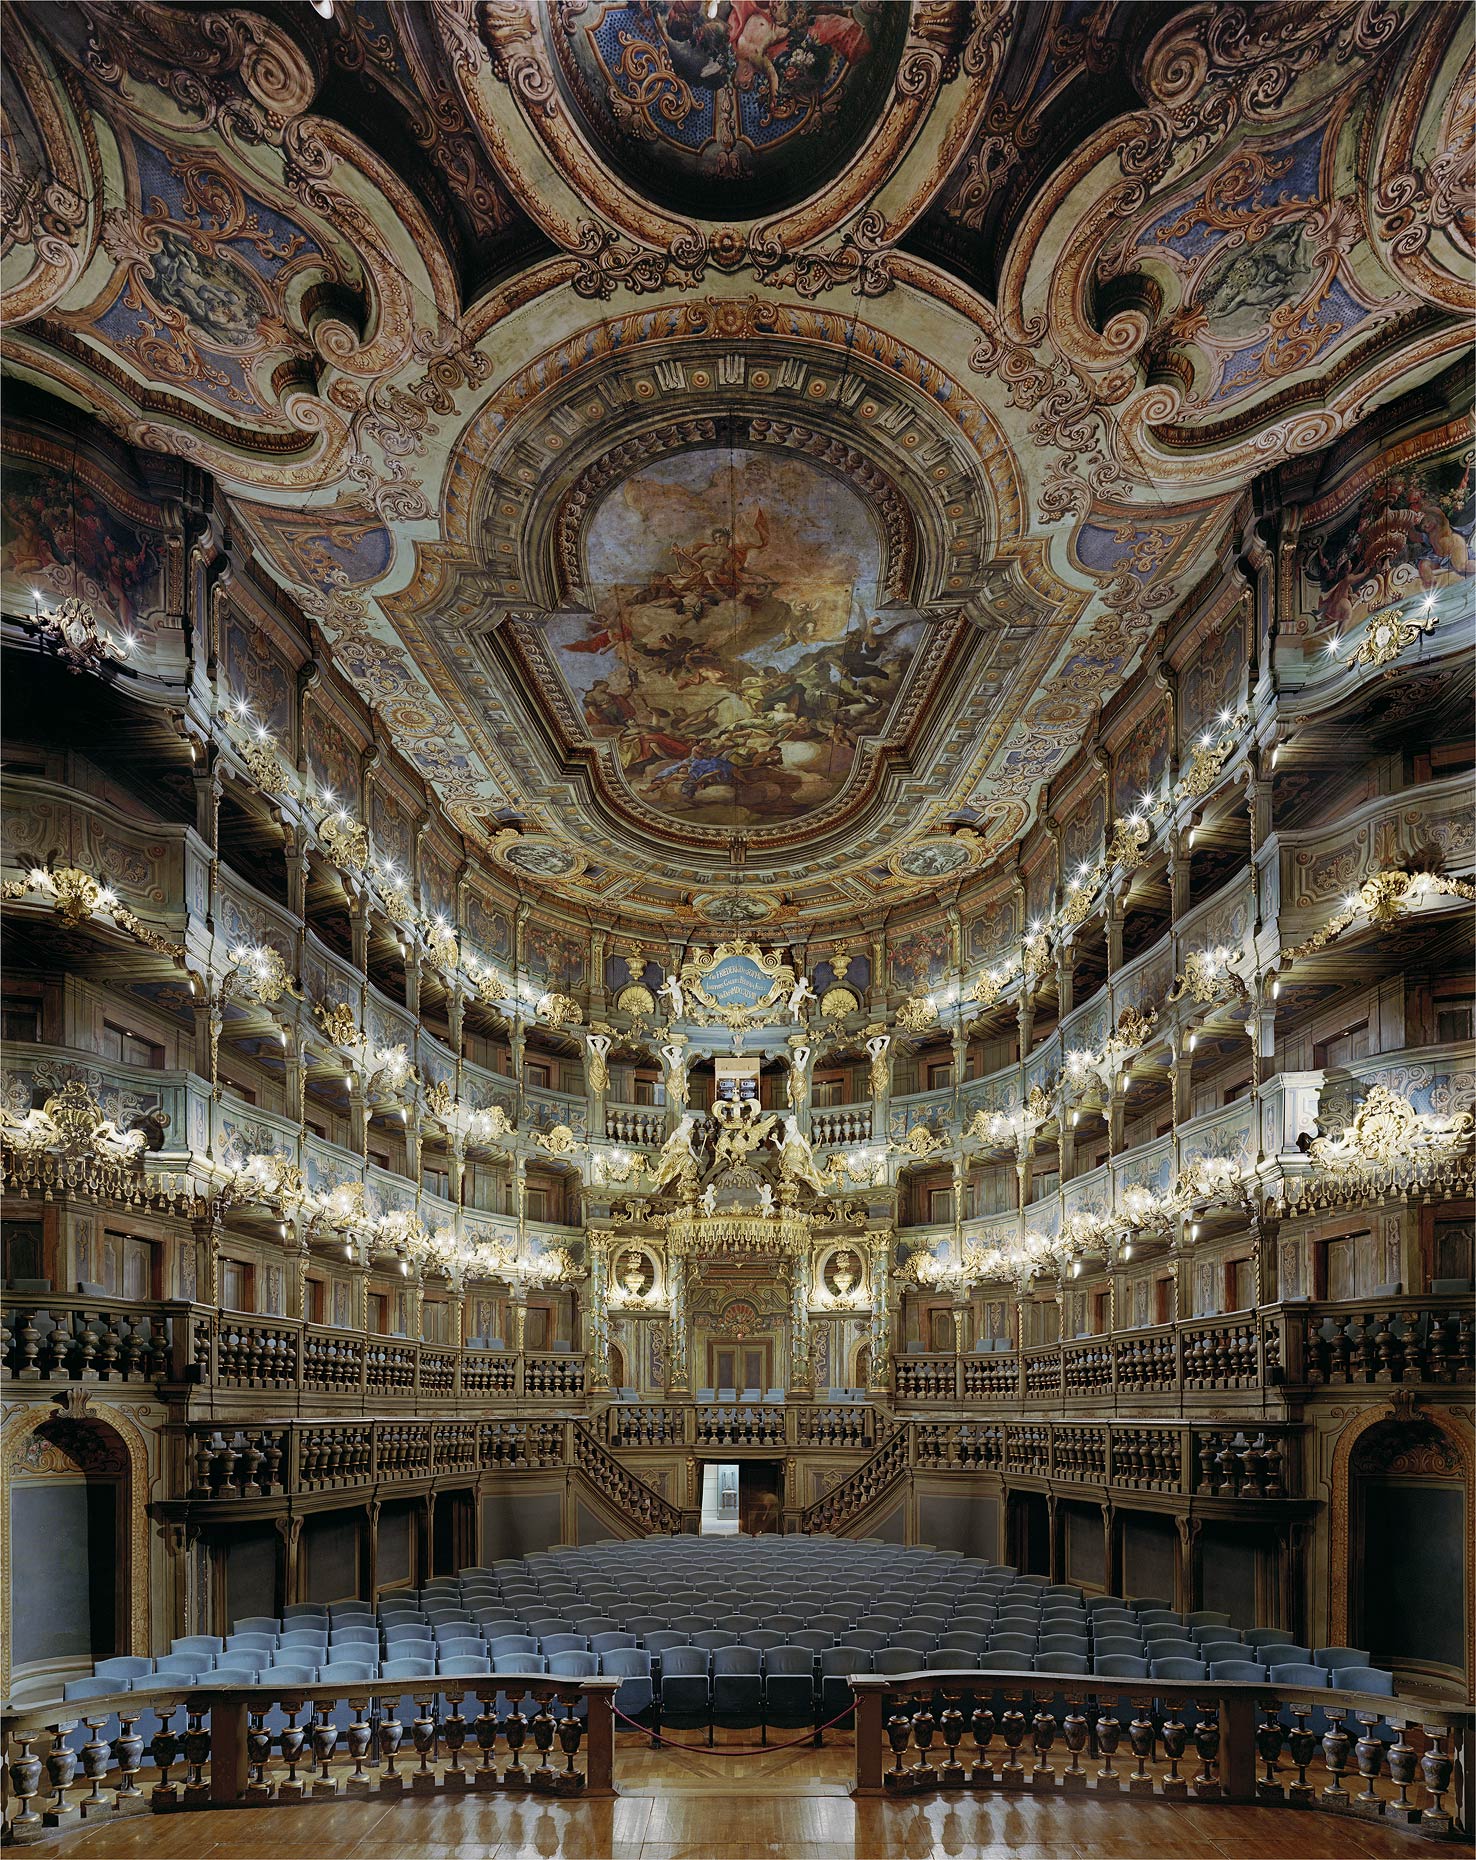 Markgrafliches Opernhaus, Bayreuth, Germany, 2008